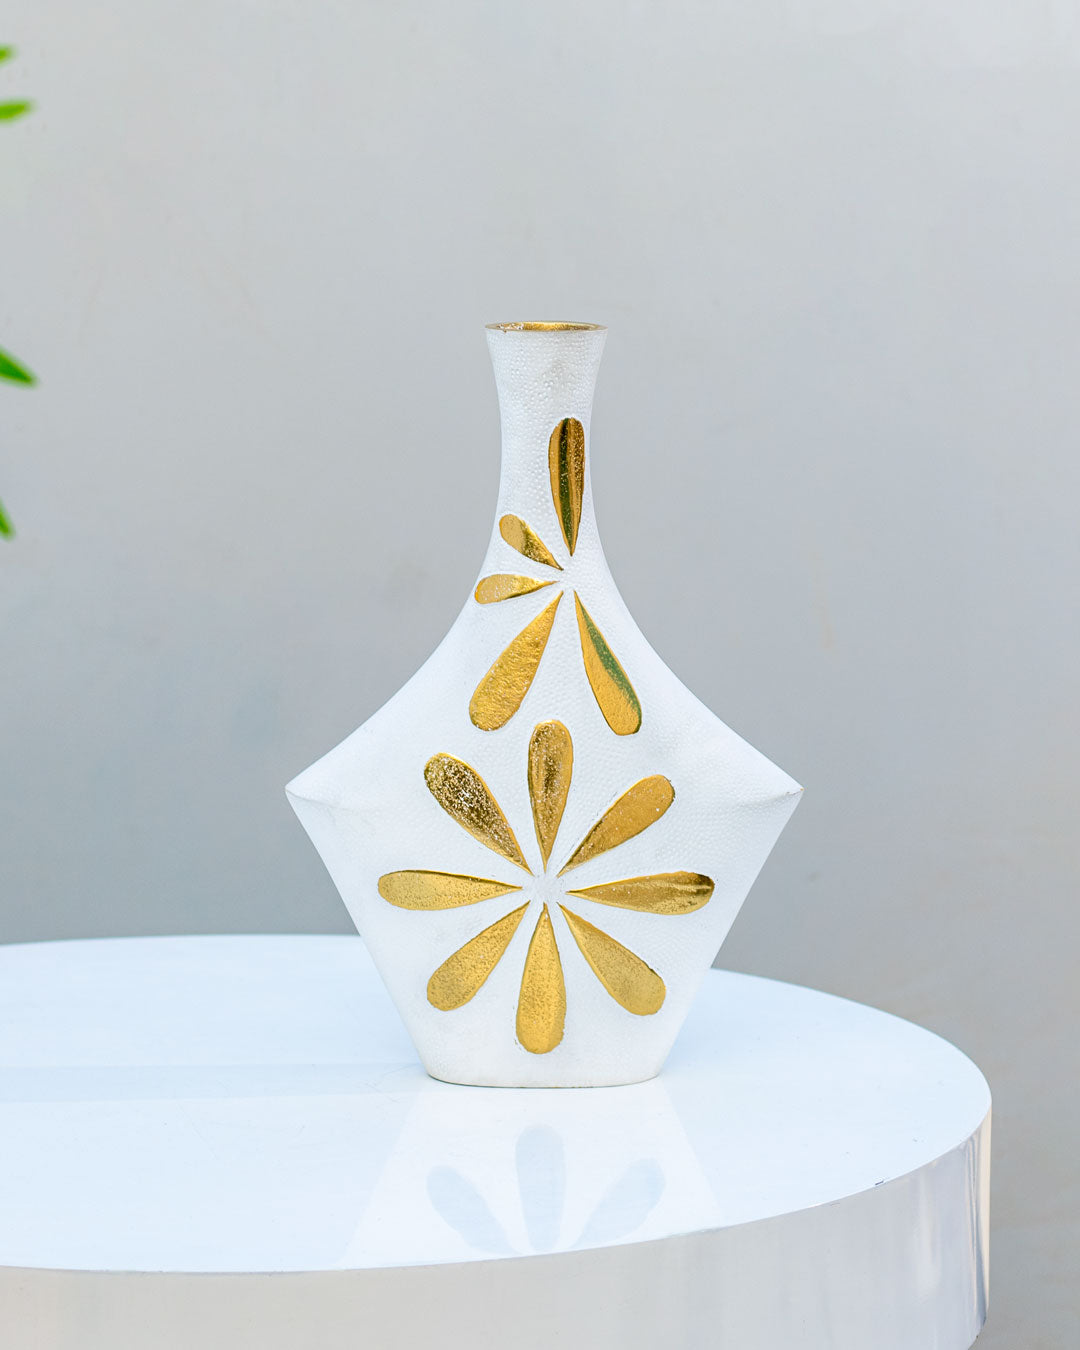 Inclined Leaf Flower Vase -11"